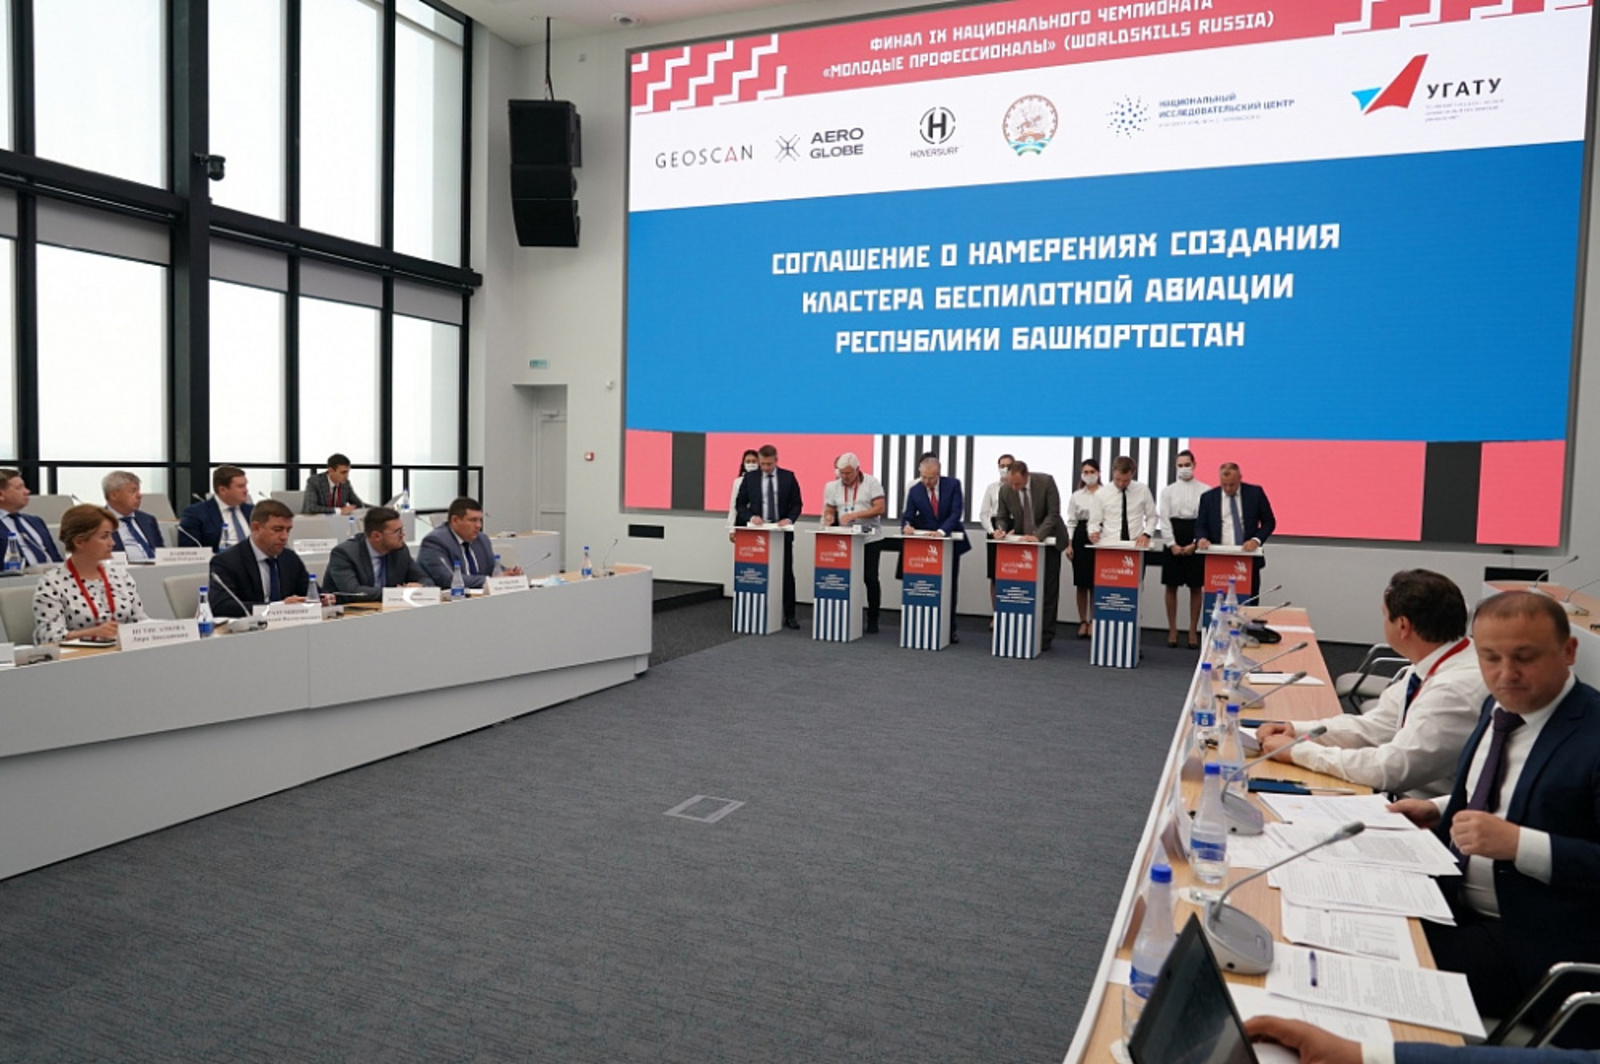 Правительство Башкортостана заключило соглашение с бизнесом о создании кластера беспилотной авиации